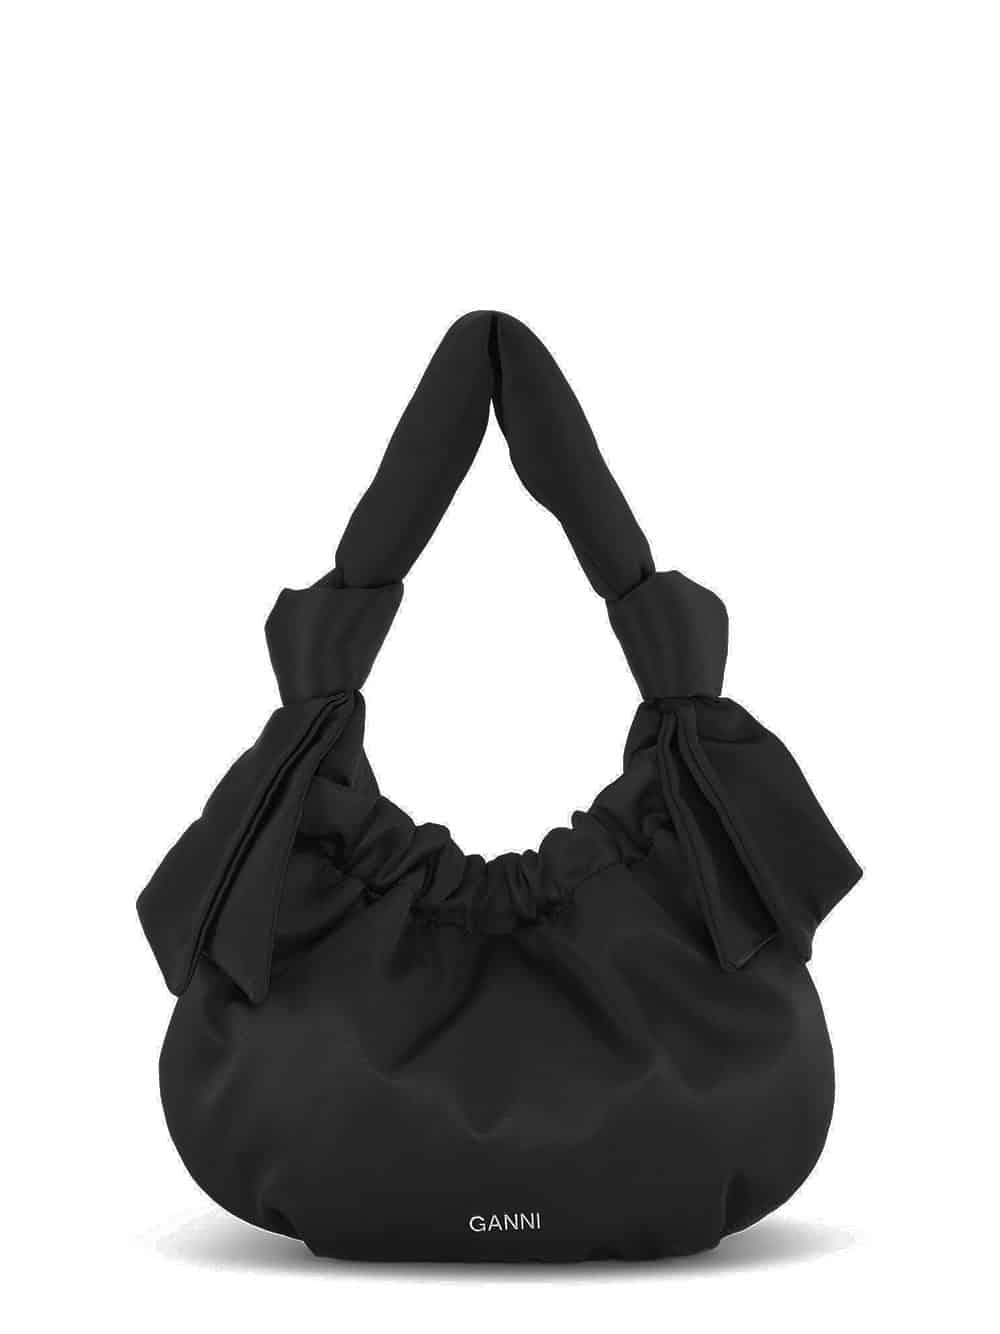 Ganni small Hobo bag (Size: OS) product